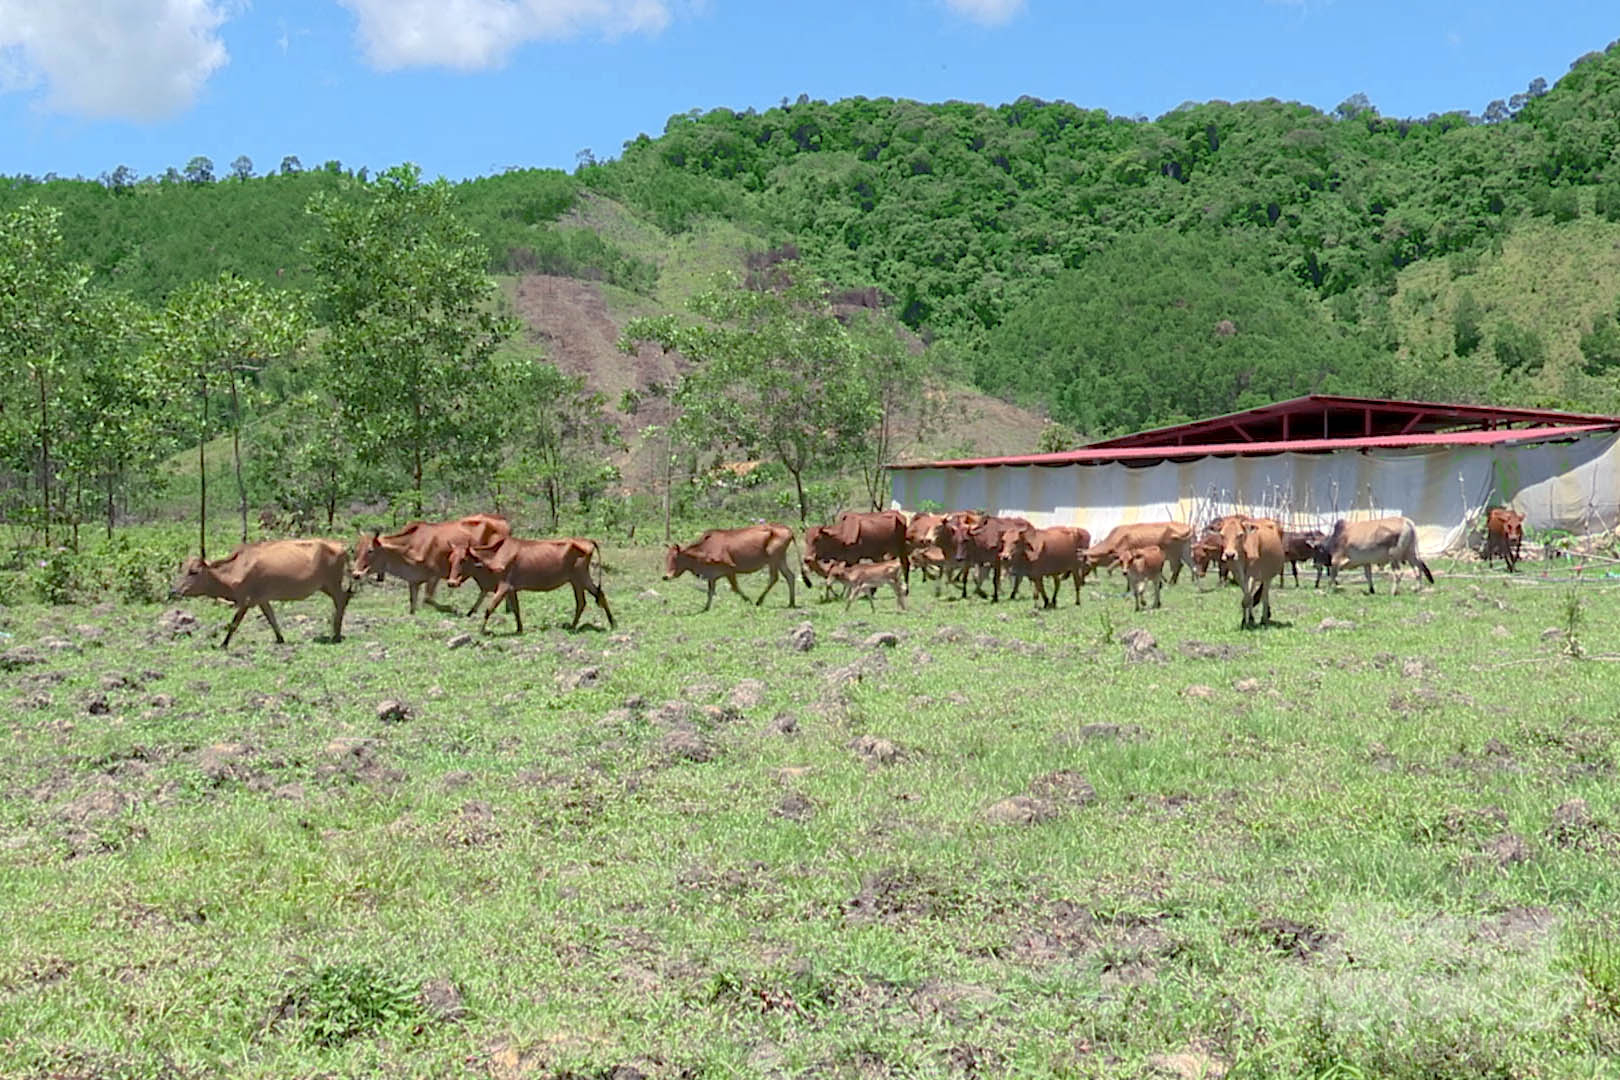 Huyện miền núi A Lưới có nhiều điều kiện thuận lợi để phát triển chăn nuôi bò theo hướng hàng hóa, hữu cơ. Ảnh: Công Điền.